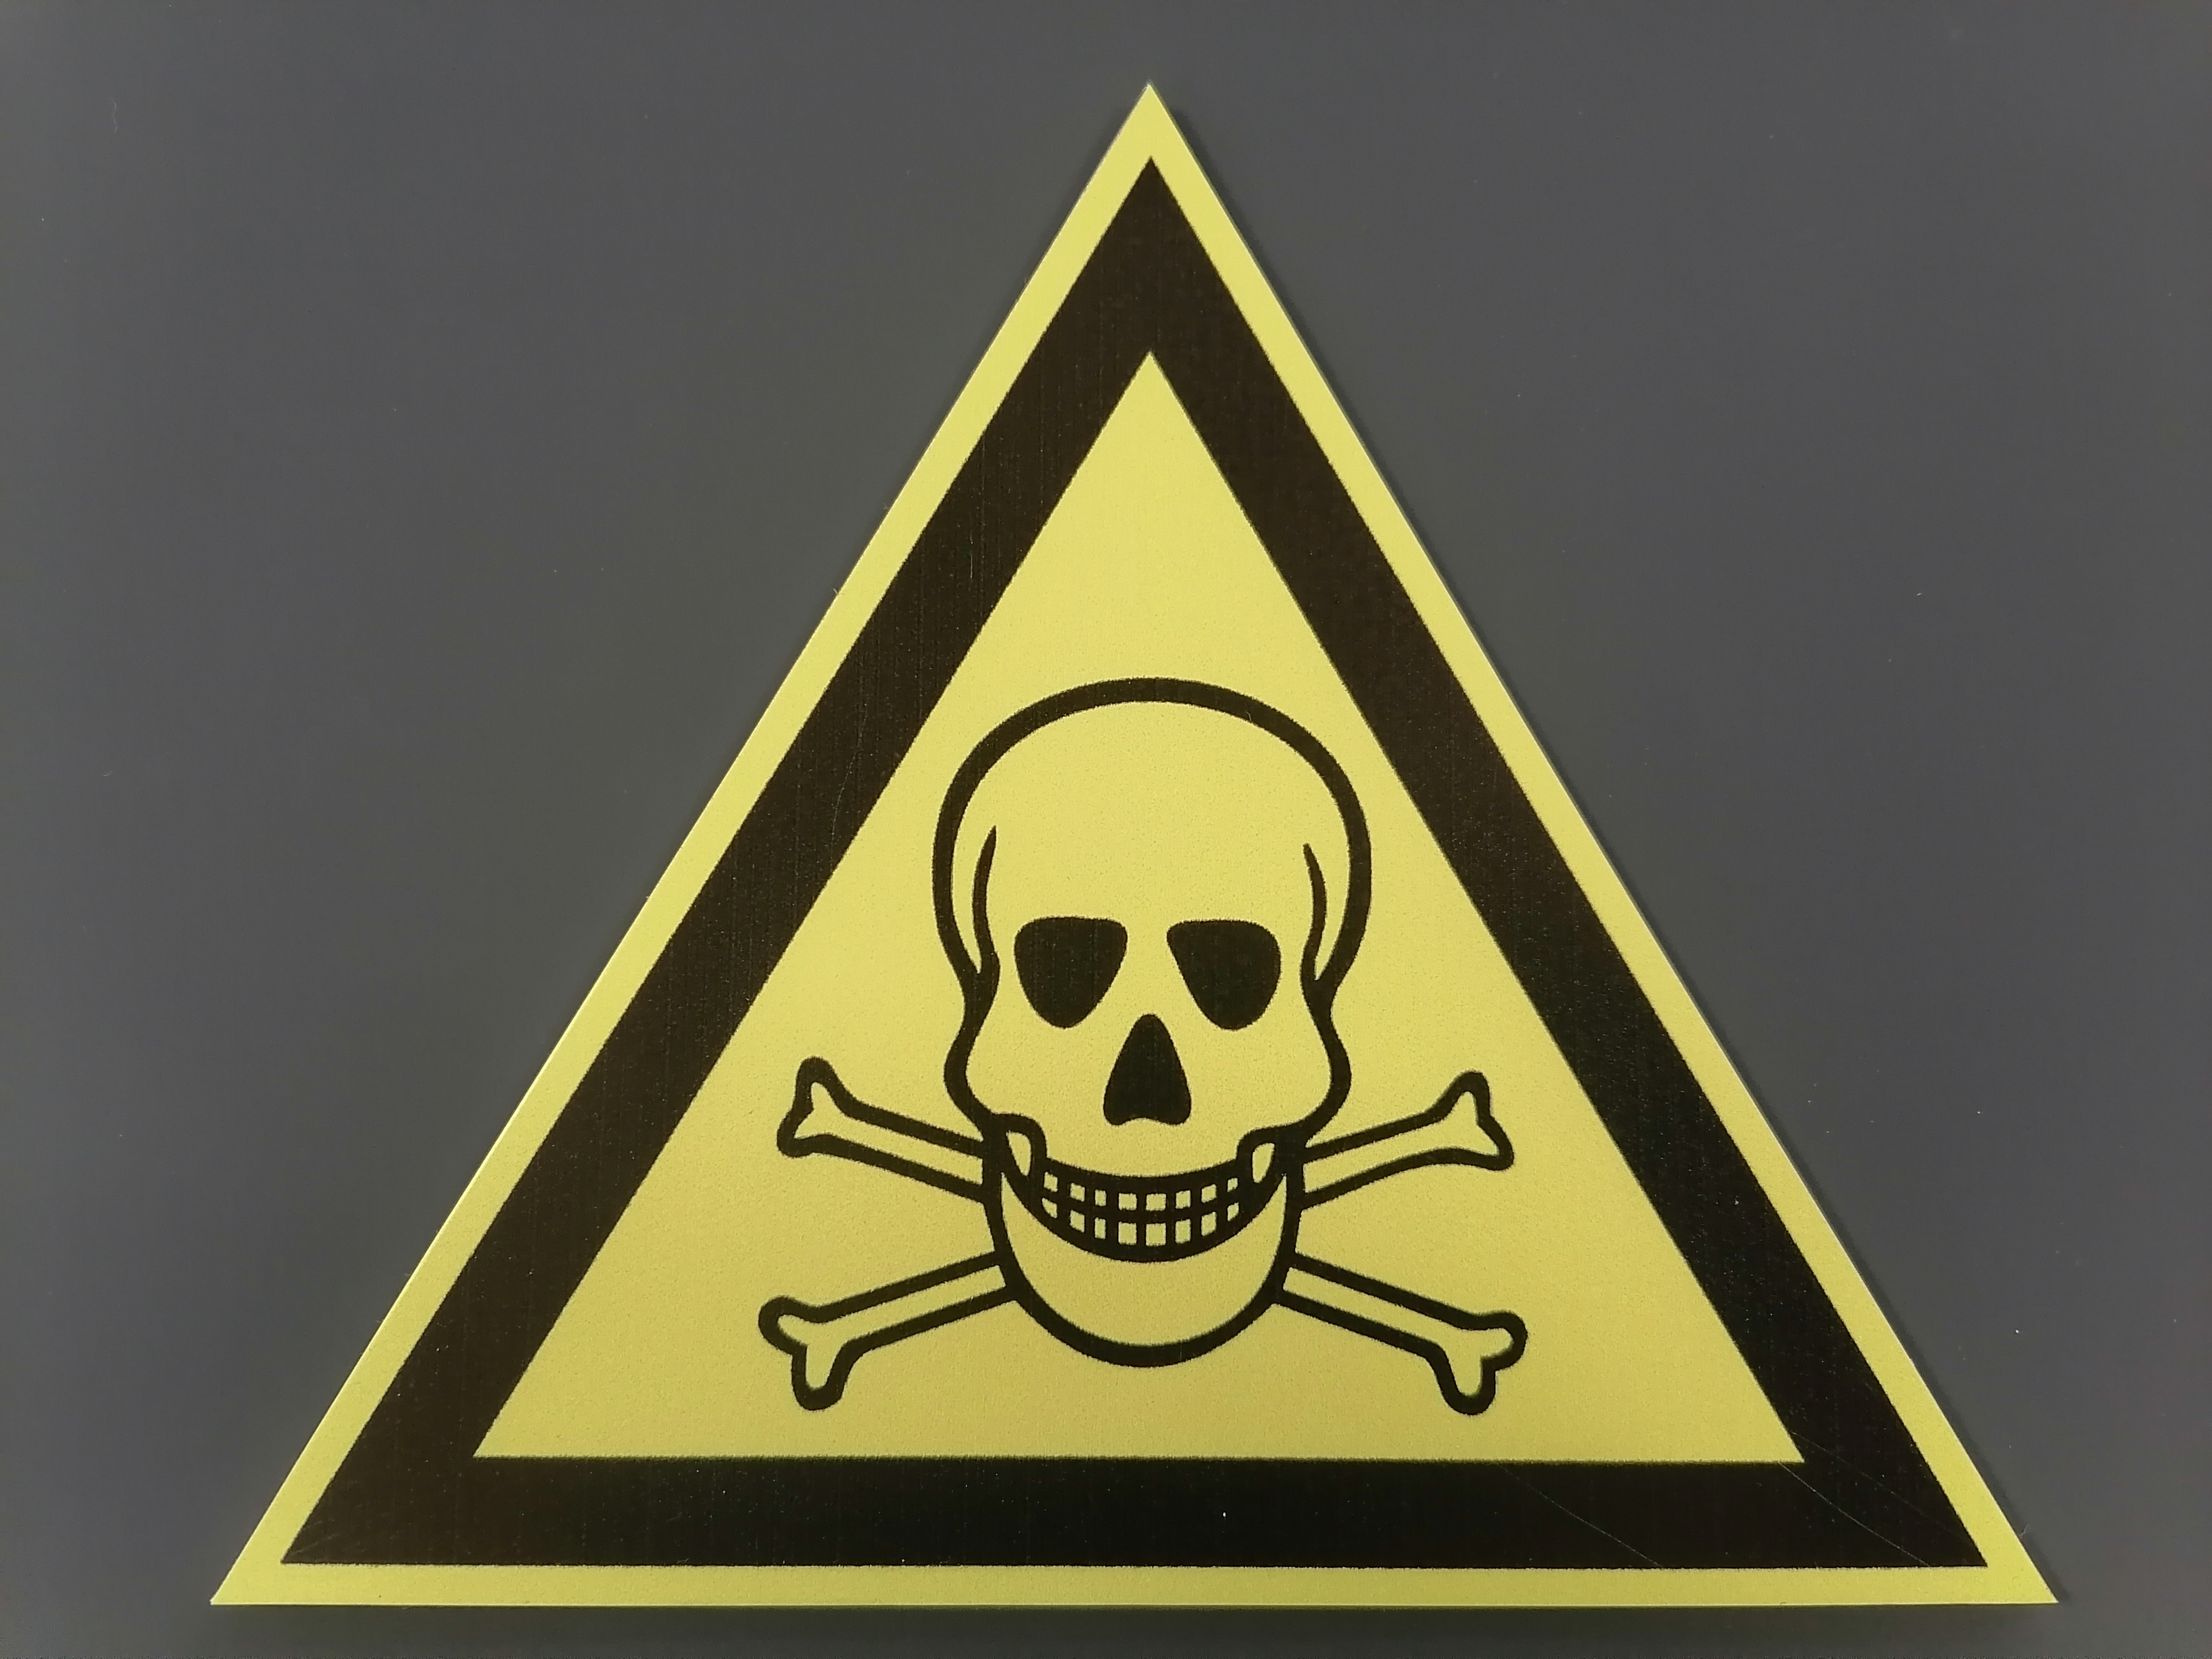 Опасность 3.3. Опасно ядовитые вещества. Знаки безопасности ядовитые вещества. Знак опасно ядовитые вещества. Токсичные вещества знак.